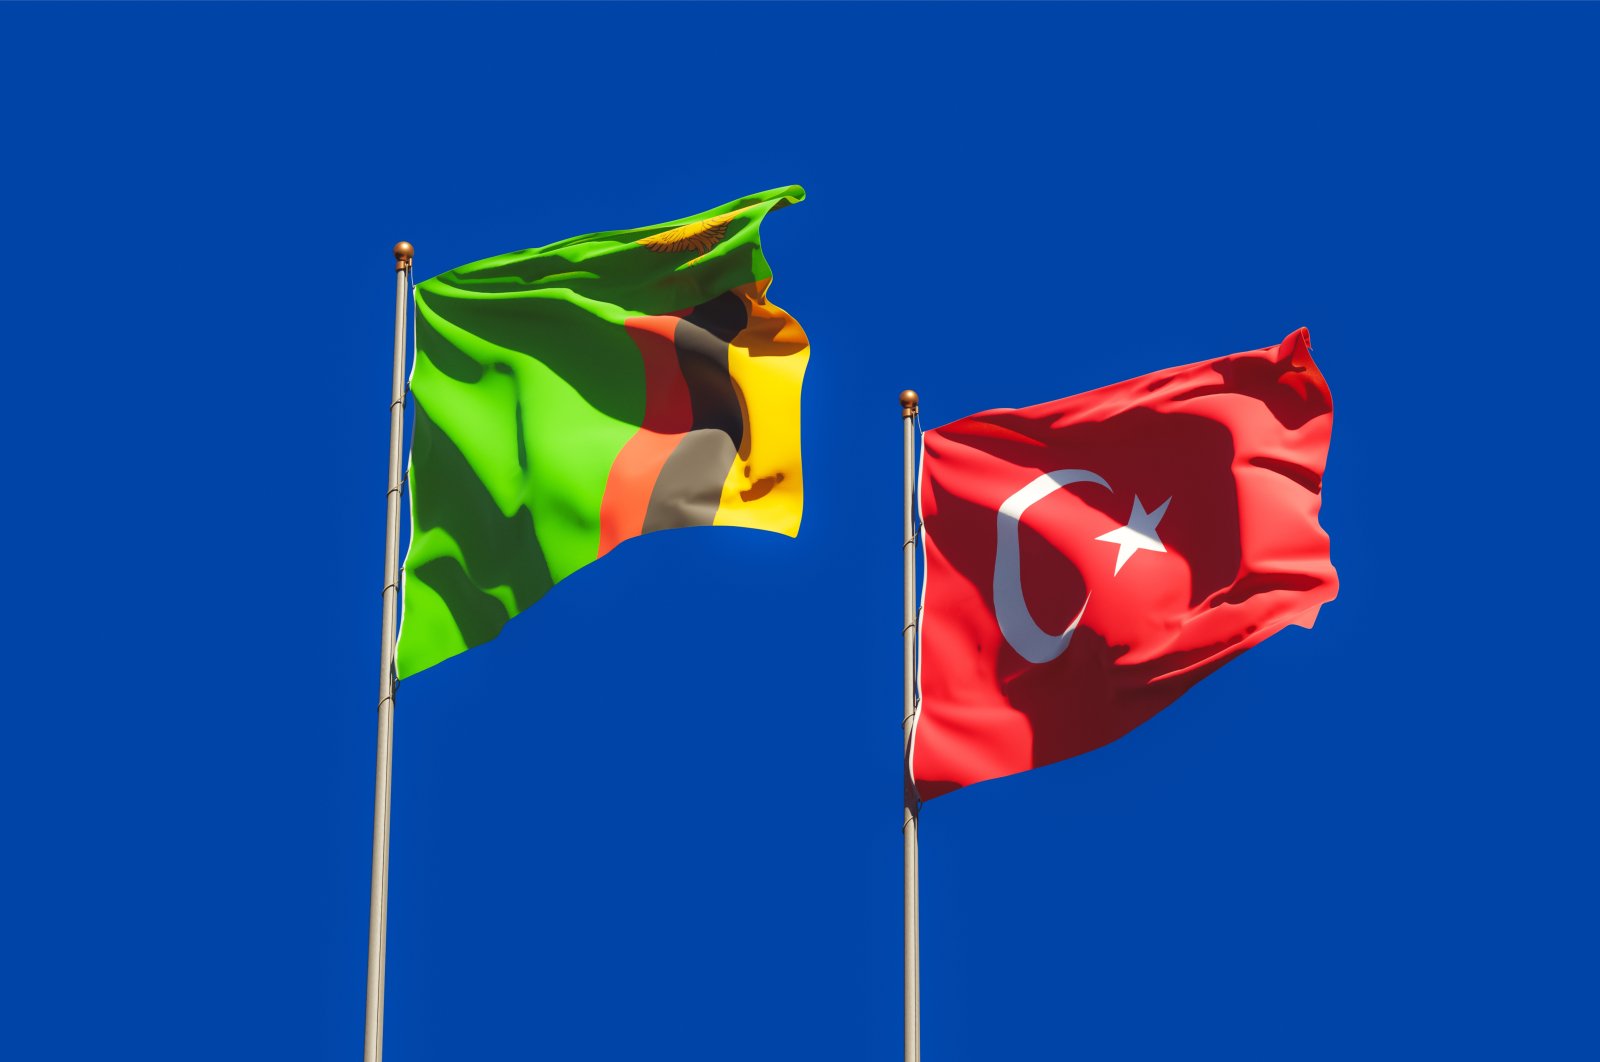 Turki berkomitmen untuk melanjutkan kemitraan dengan Zambia: Utusan